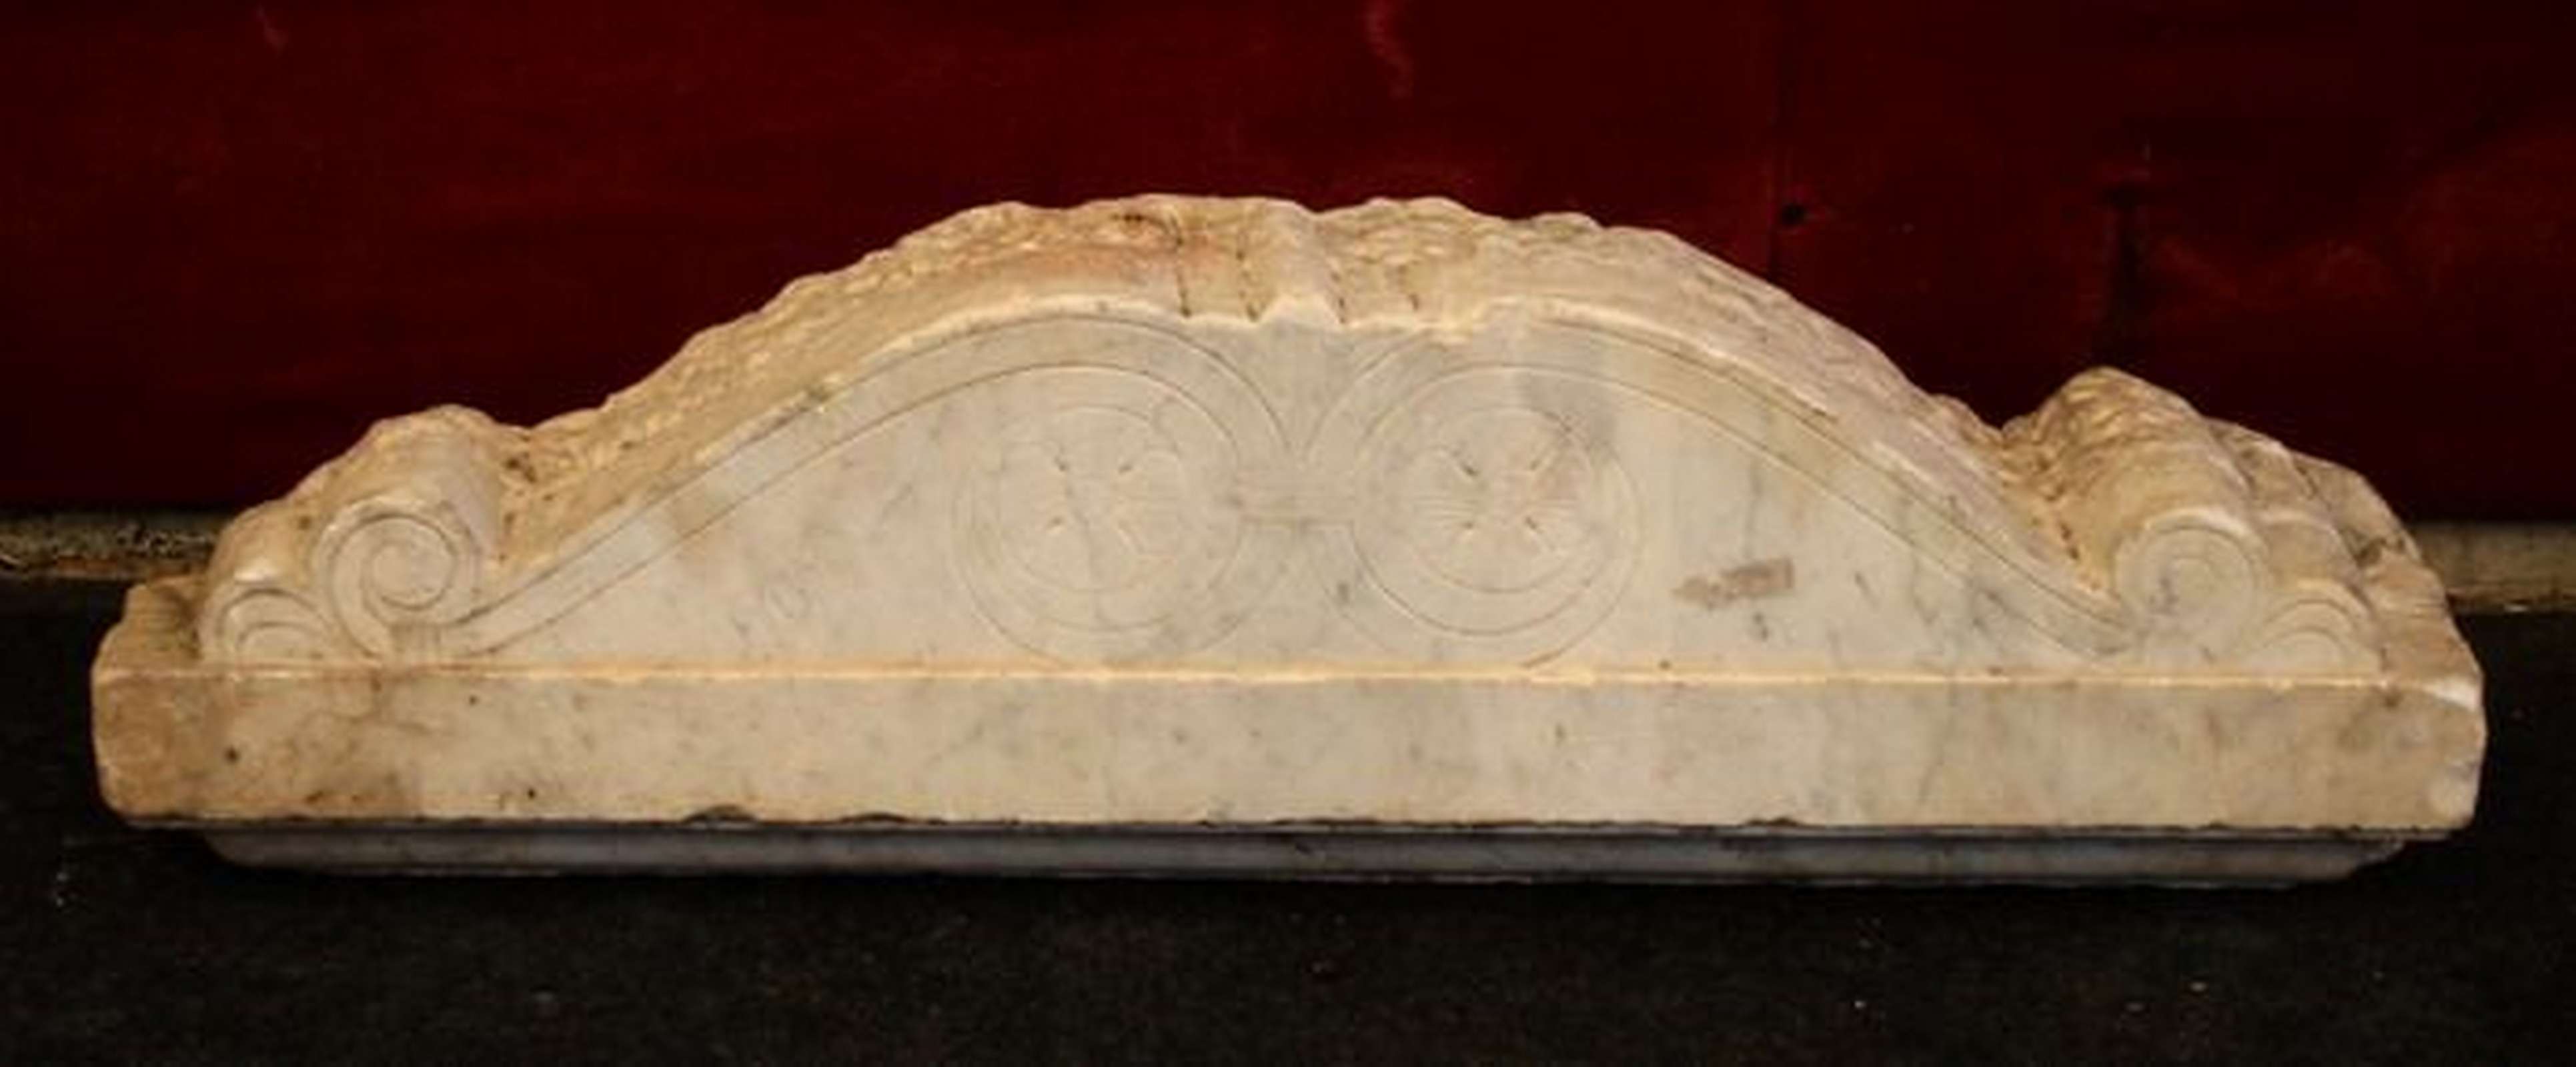 Antico pannello in marmo - Elementi Architettonici - Architettura - Prodotti - Antichità Fiorillo